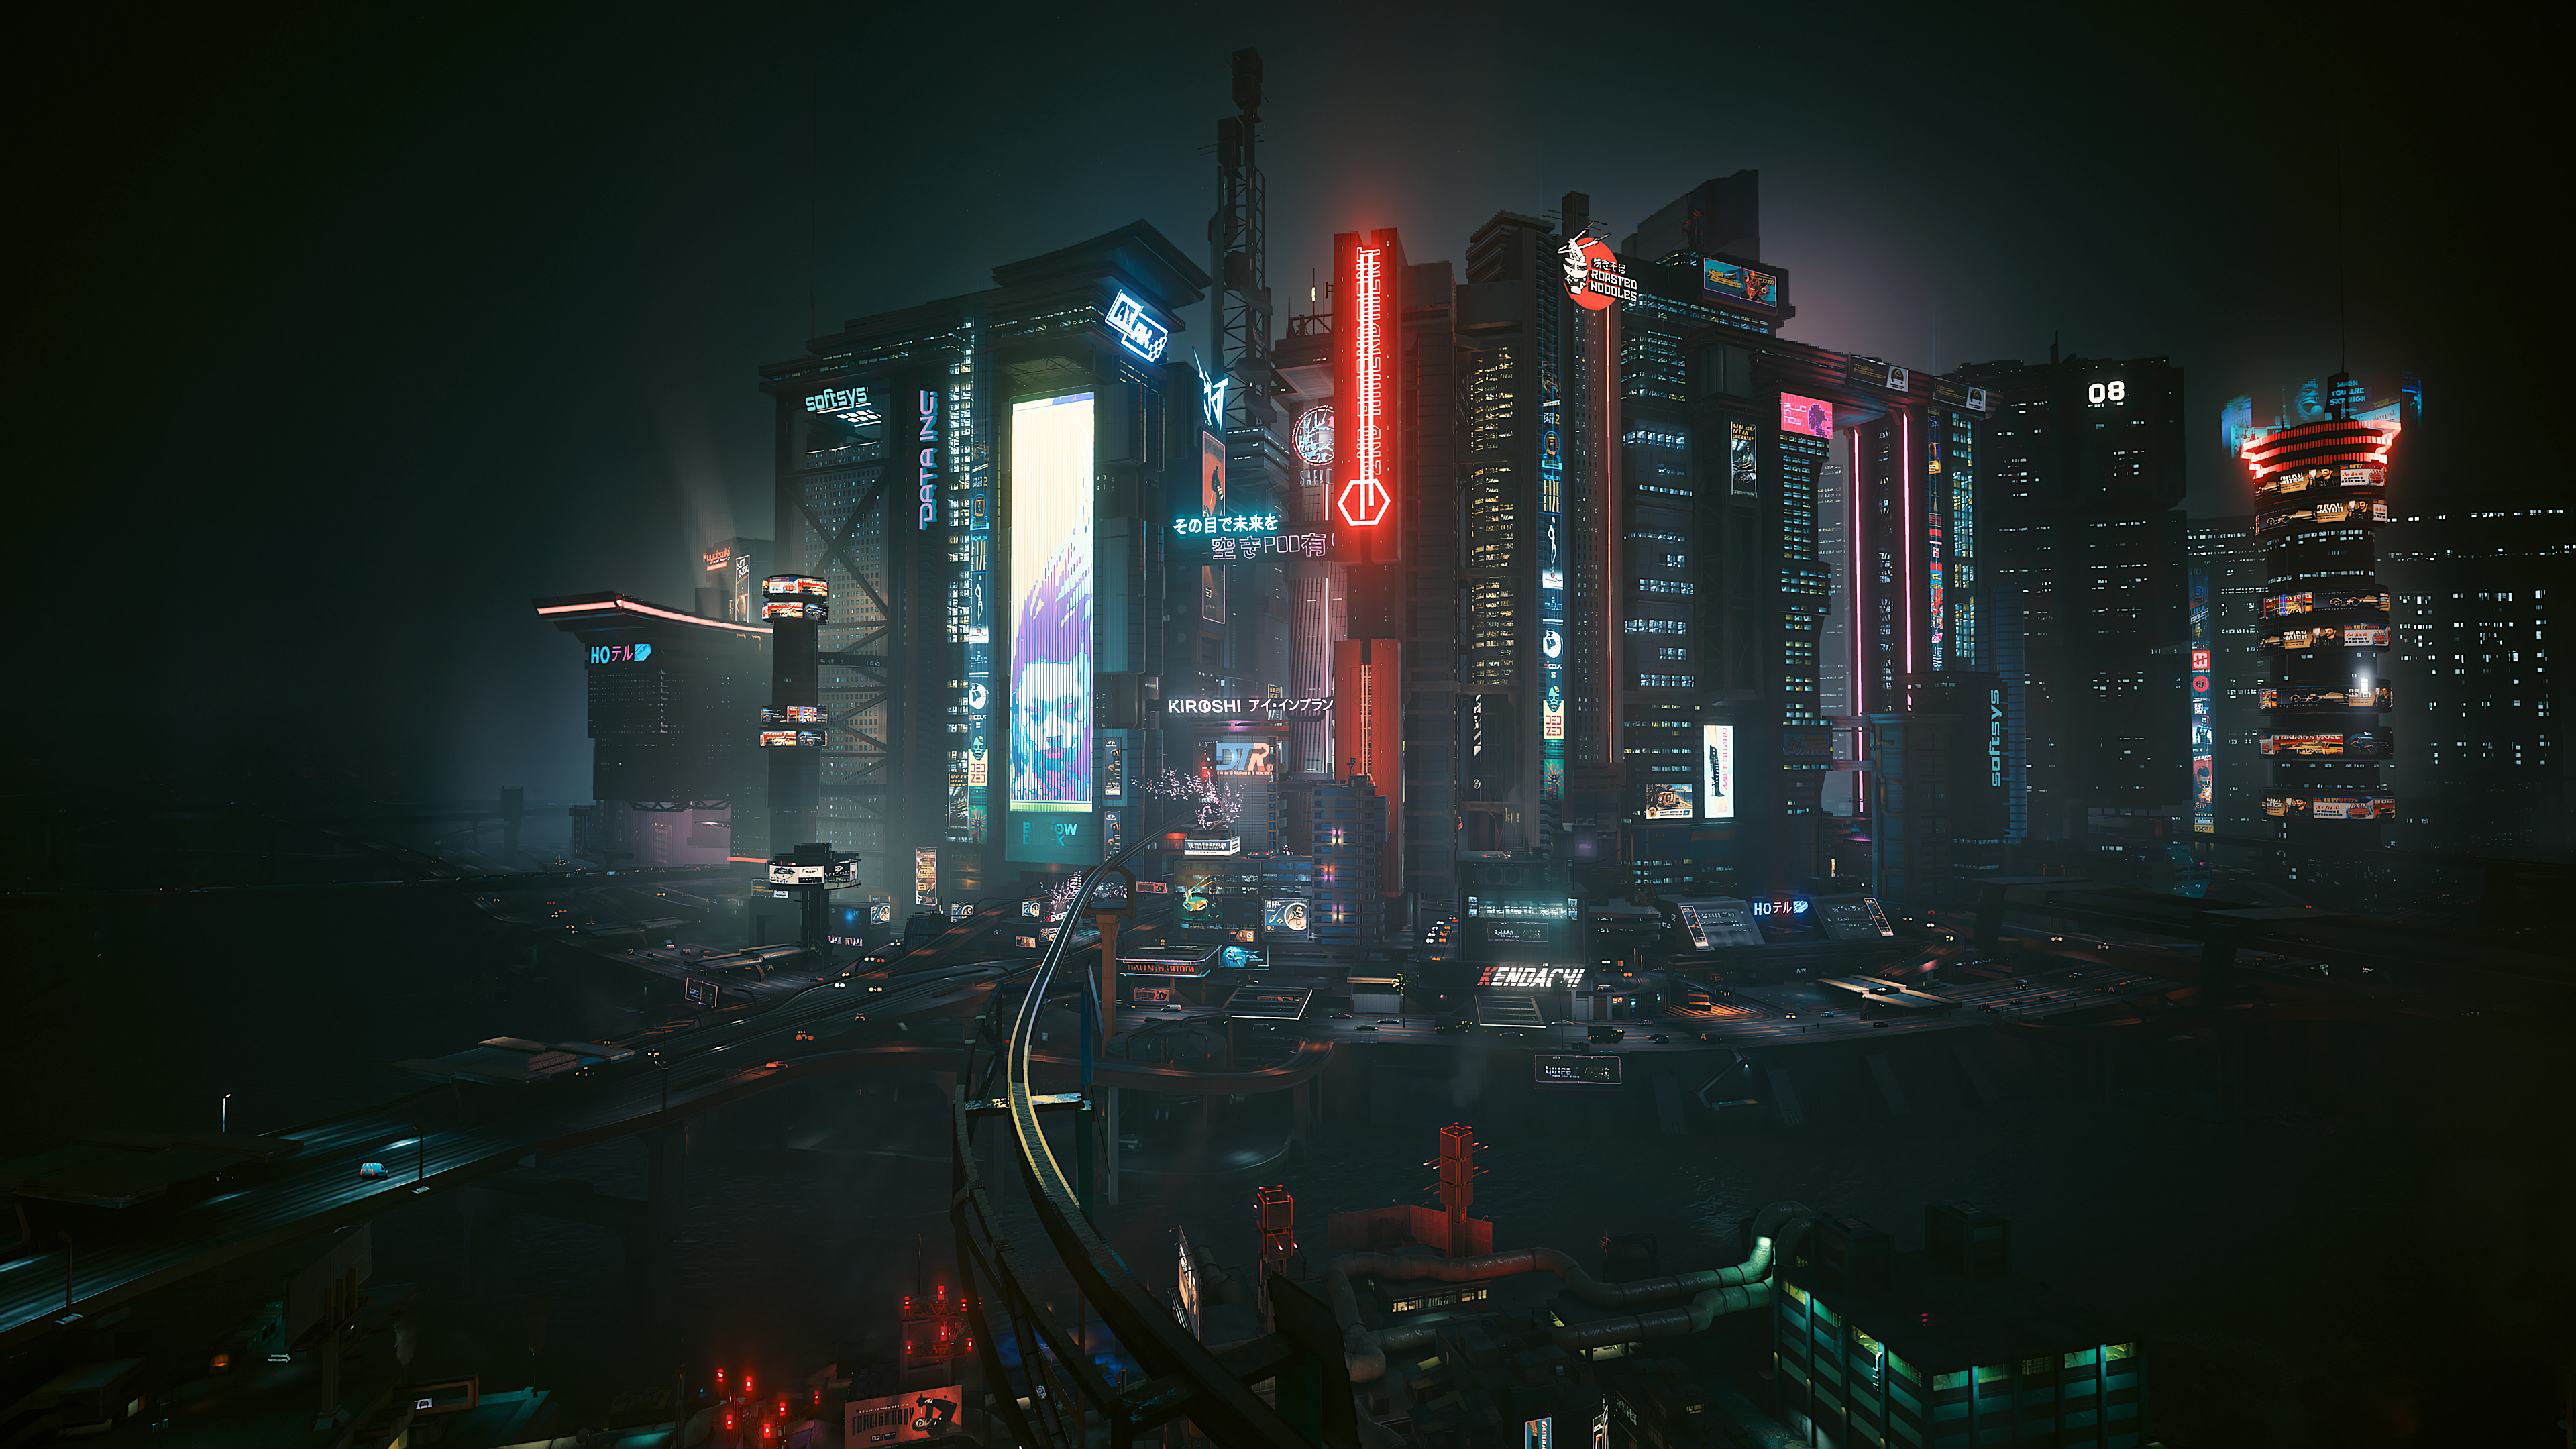 Night City Cyberpunk 2077 Cyberpunk Neon Lights Dark Tower Skyscraper Futurism Futuristic Video Game 3840x2160